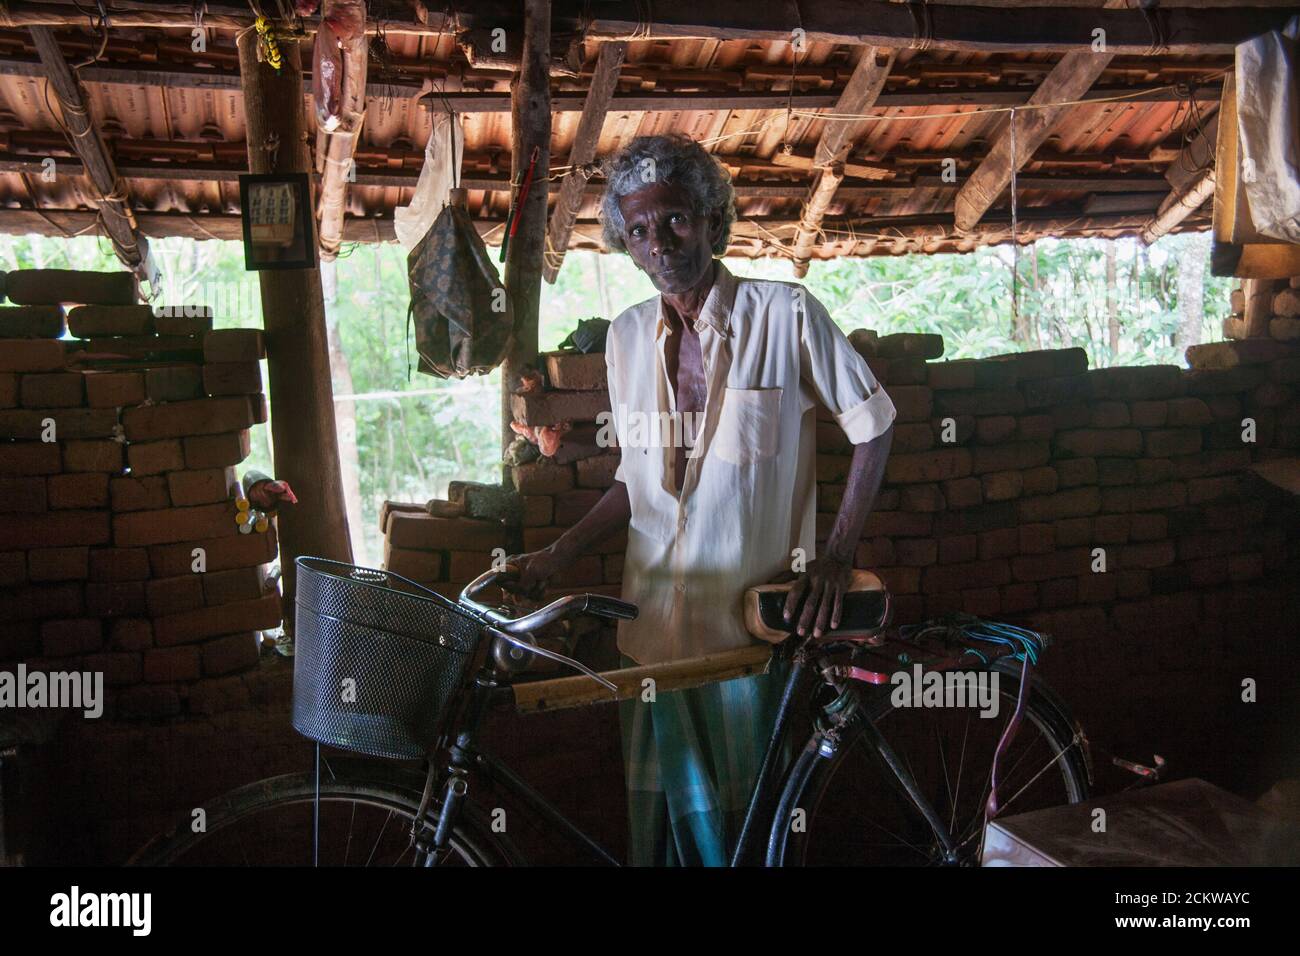 Domicile de T.H. Piyadasa, 62 ans, et vit avec sa femme de 60 ans. Il a vendu du poisson frais sur son vélo mais a été forcé de renoncer quand son asthme a été très mauvais. La vie est très difficile pour le couple qui dépend d'une petite quantité payée par le gouvernement et de vendre des fruits cultivés dans le jardin. Matara, Sri Lanka. Banque D'Images